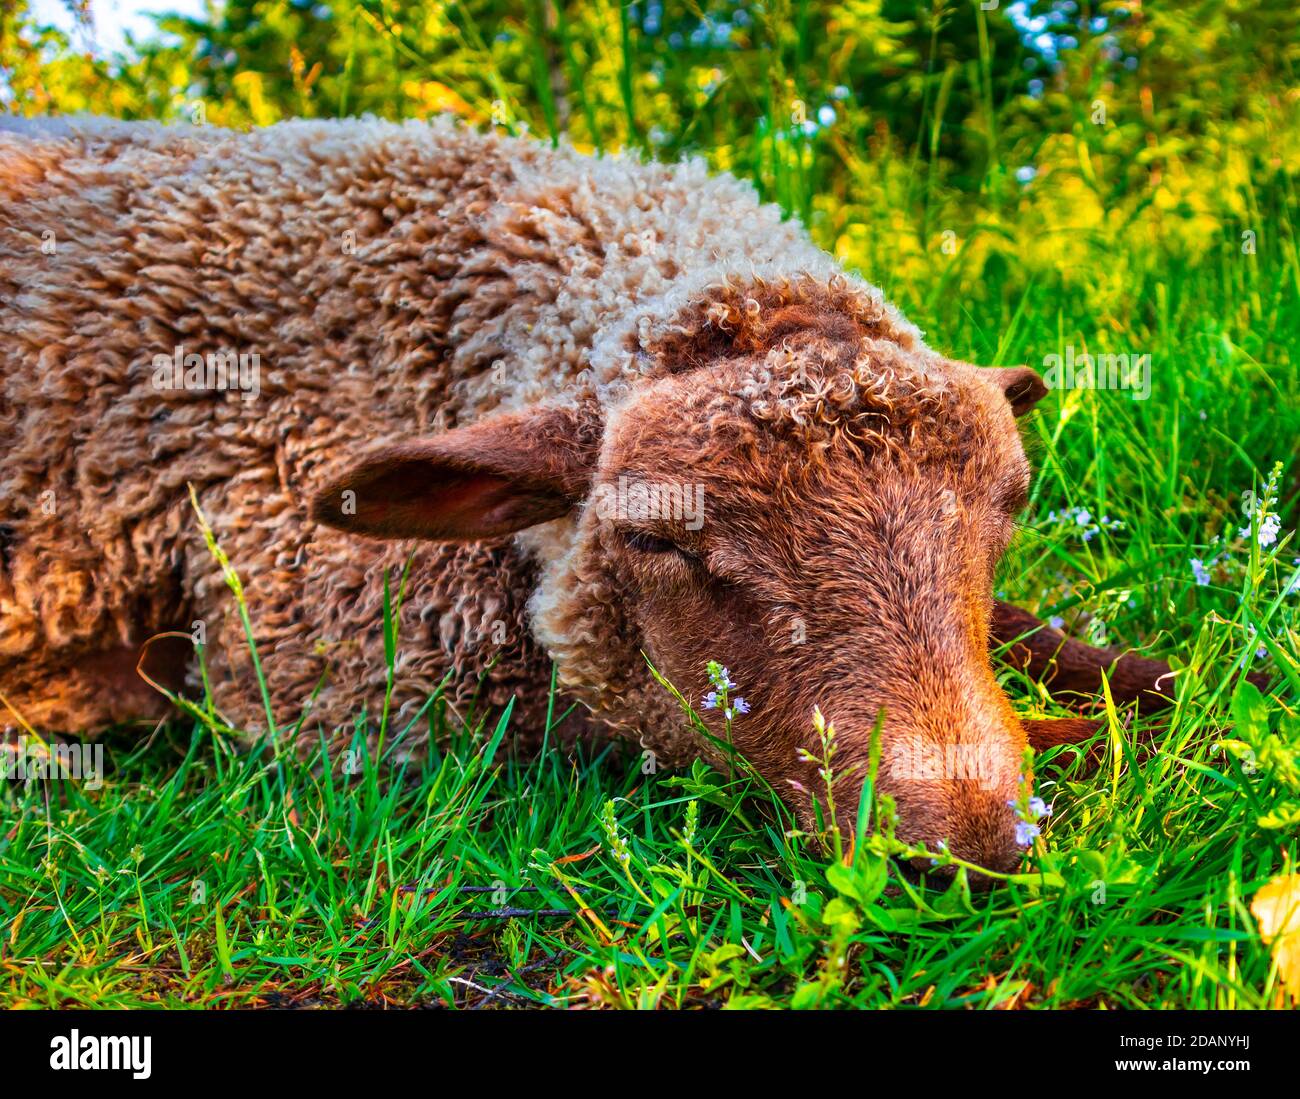 Niedliche braune Schafe liegen auf dem Boden in grünem Gras und Blumen. Verärgert Tier setzen Kopf auf die Beine, traurig. Lamm Entspannung im Freien an sonnigen Tag Stockfoto